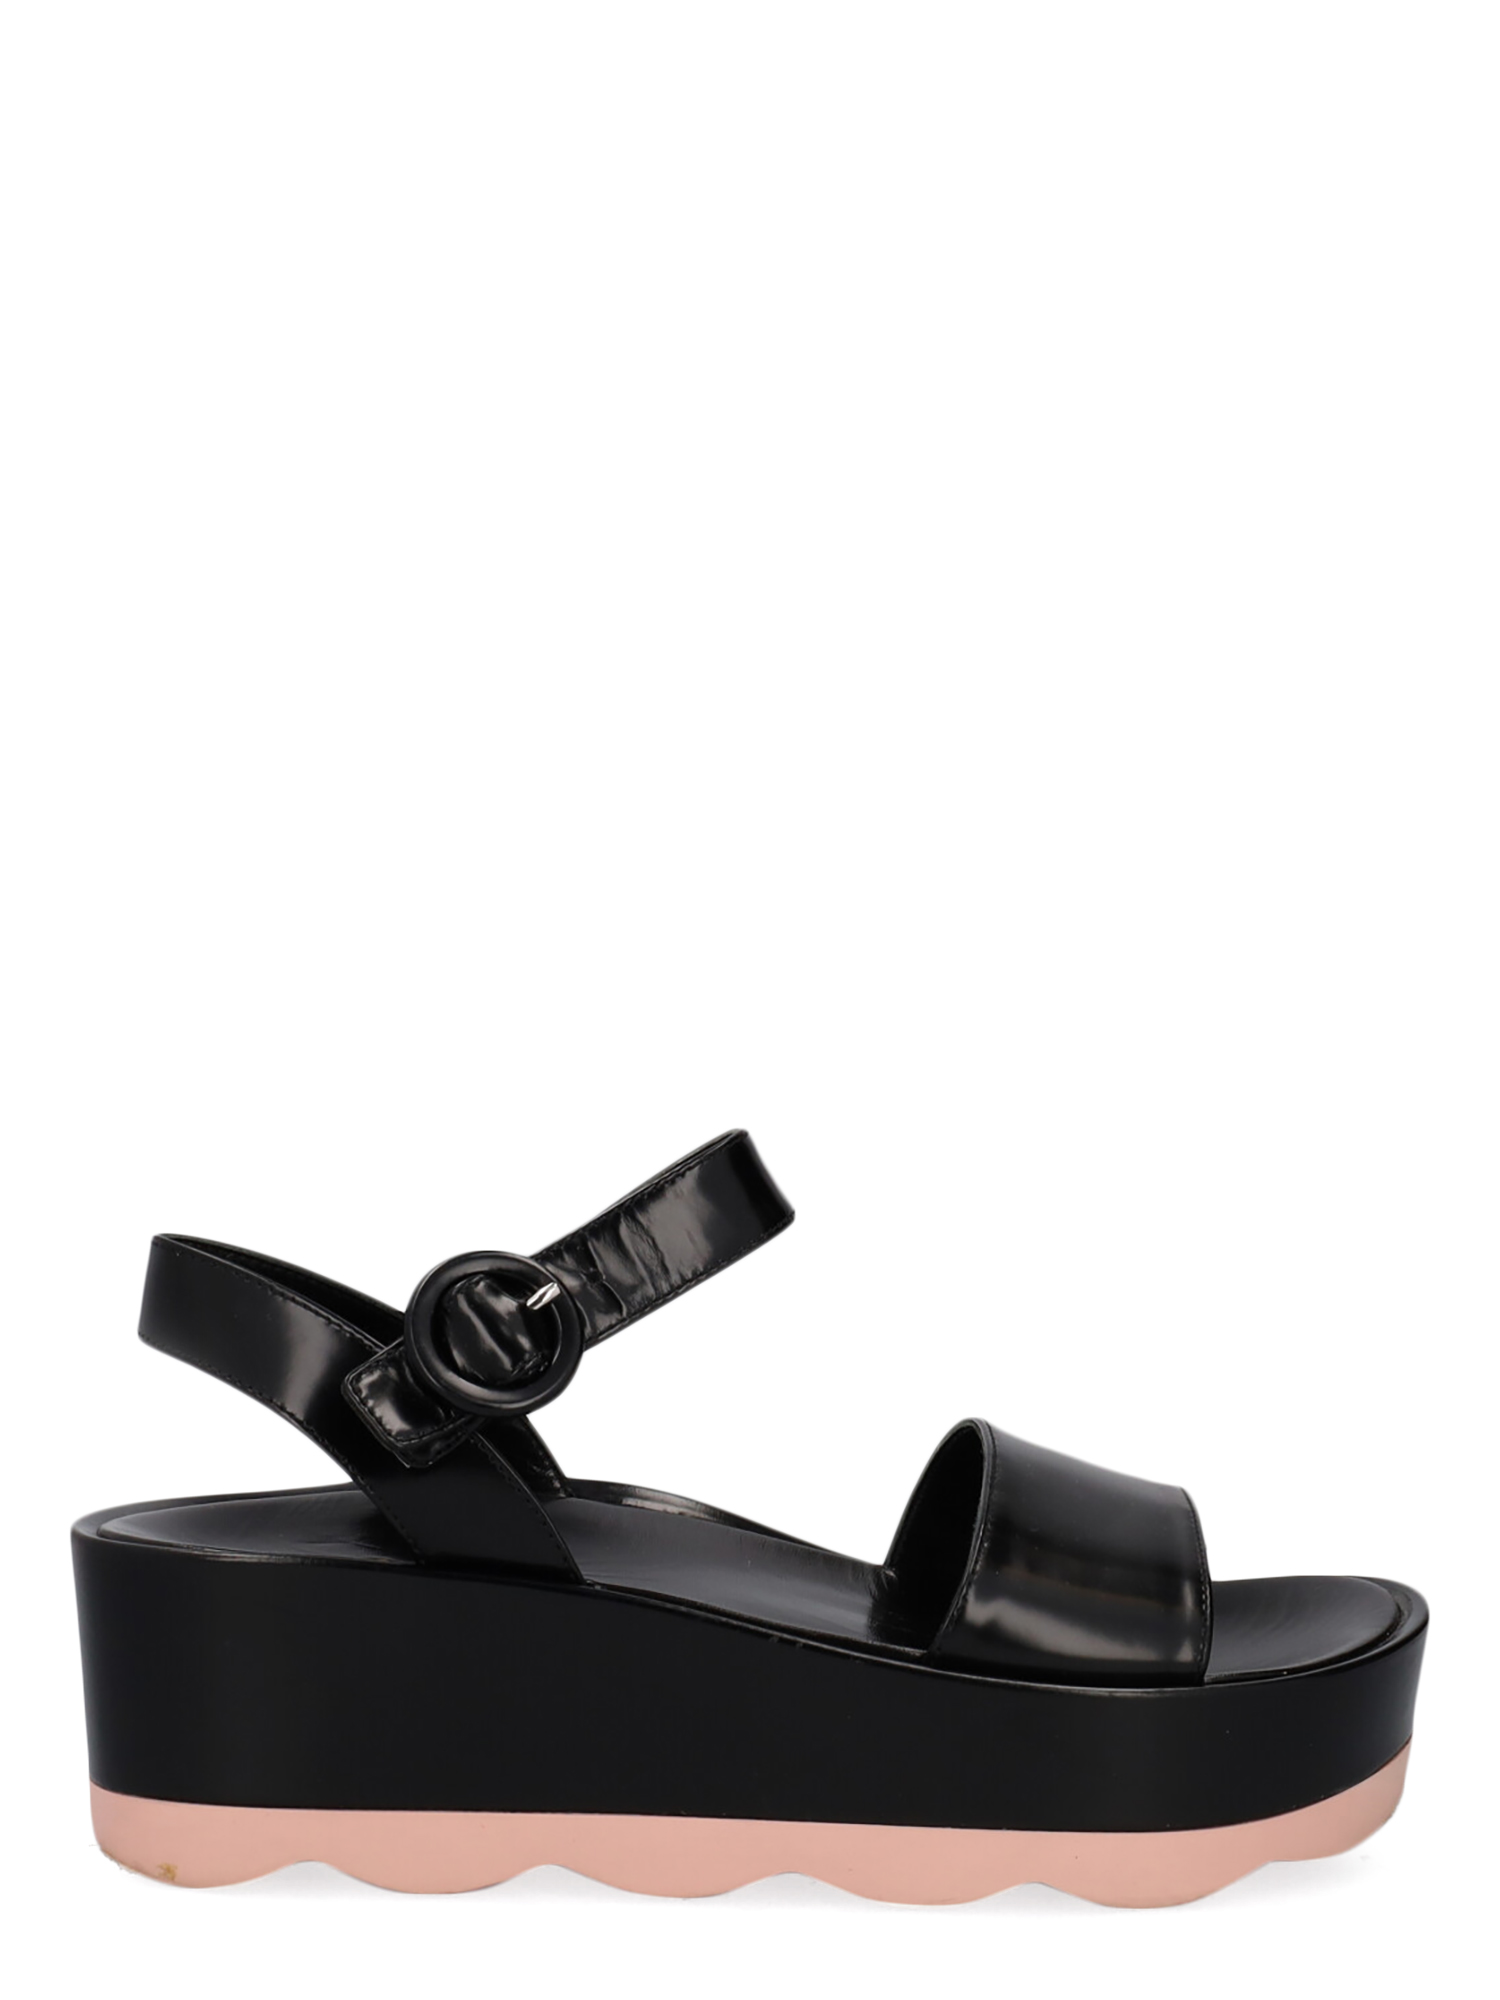 Sandales Pour Femme - Prada - En Leather Black - Taille: IT 37.5 - EU 37.5